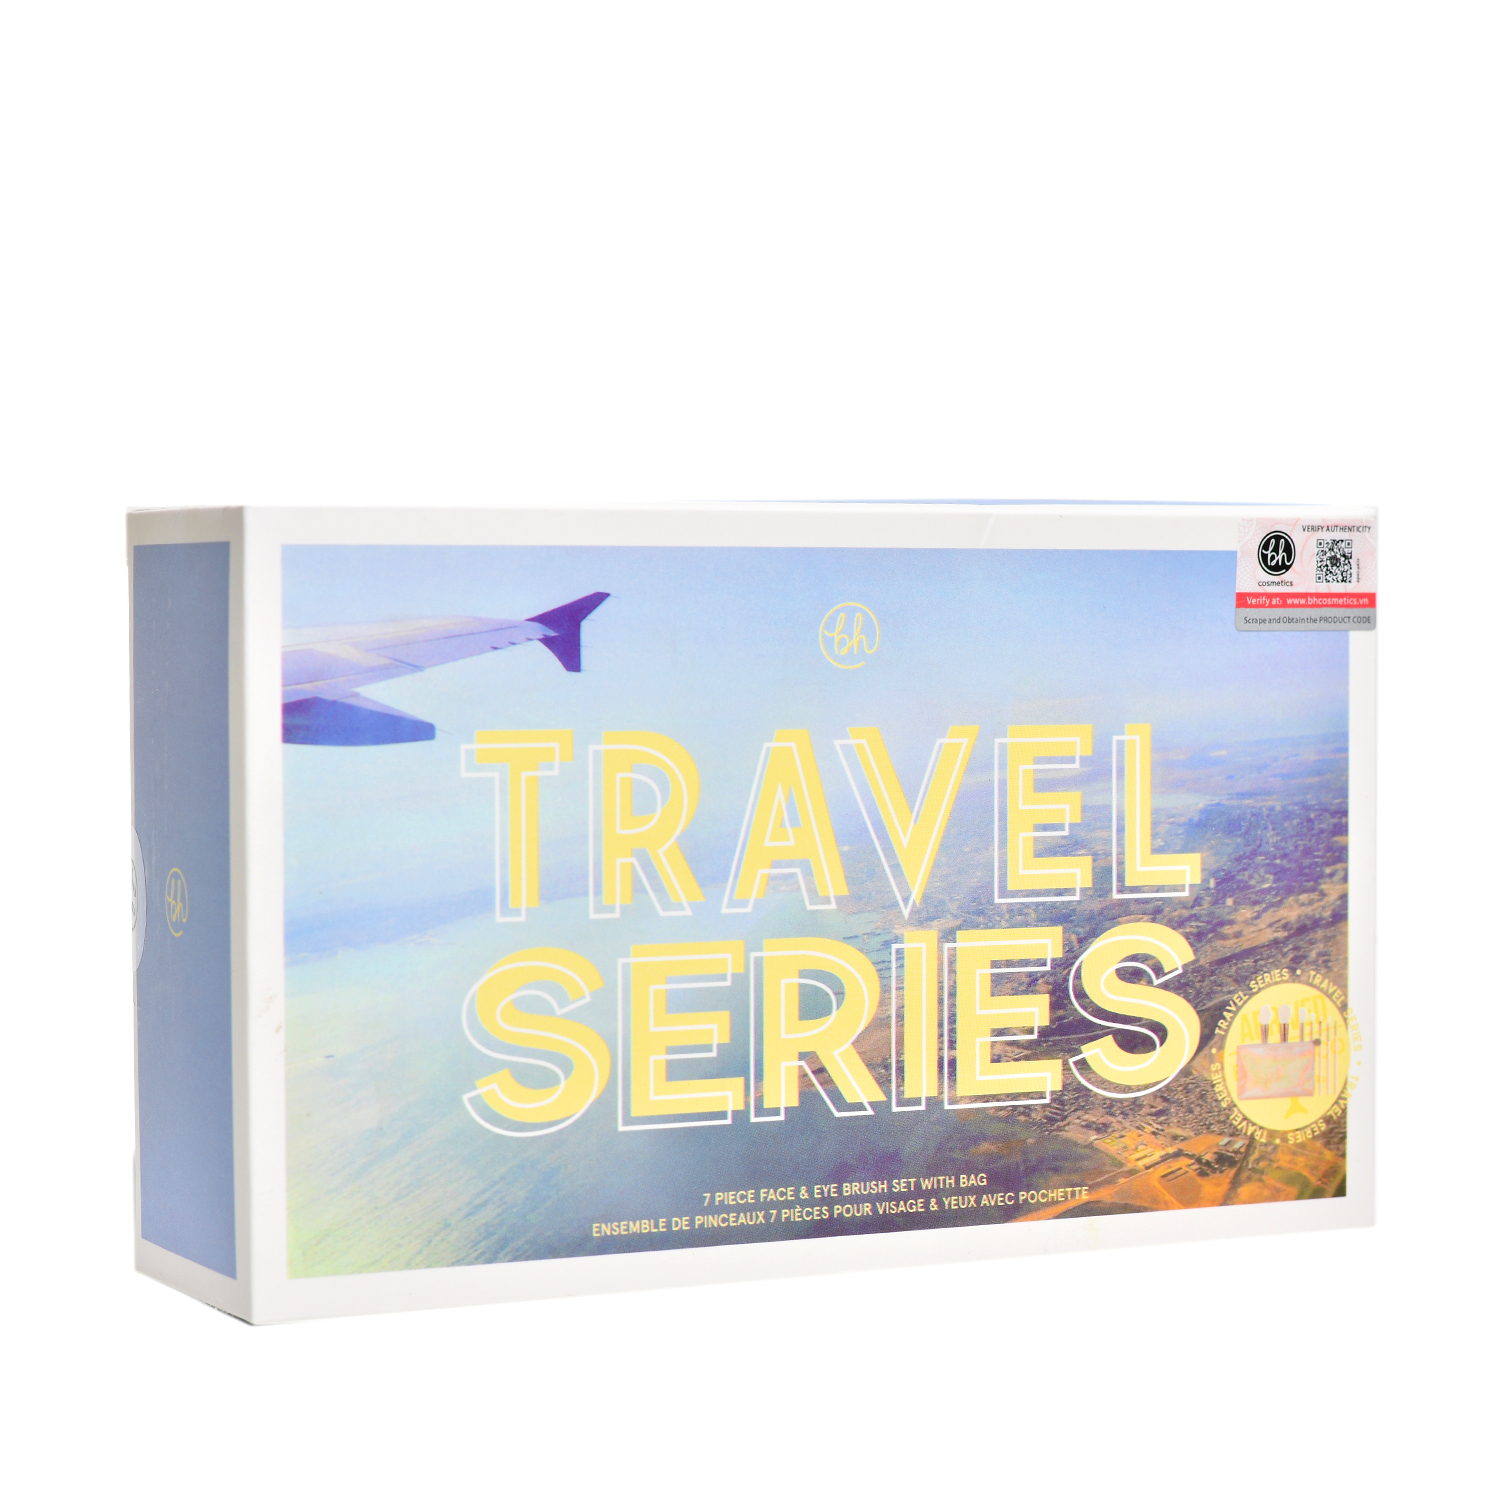 Bộ Cọ Trang Điểm BH Travel Series 7 Piece Face & Eye Brush Set With Bag